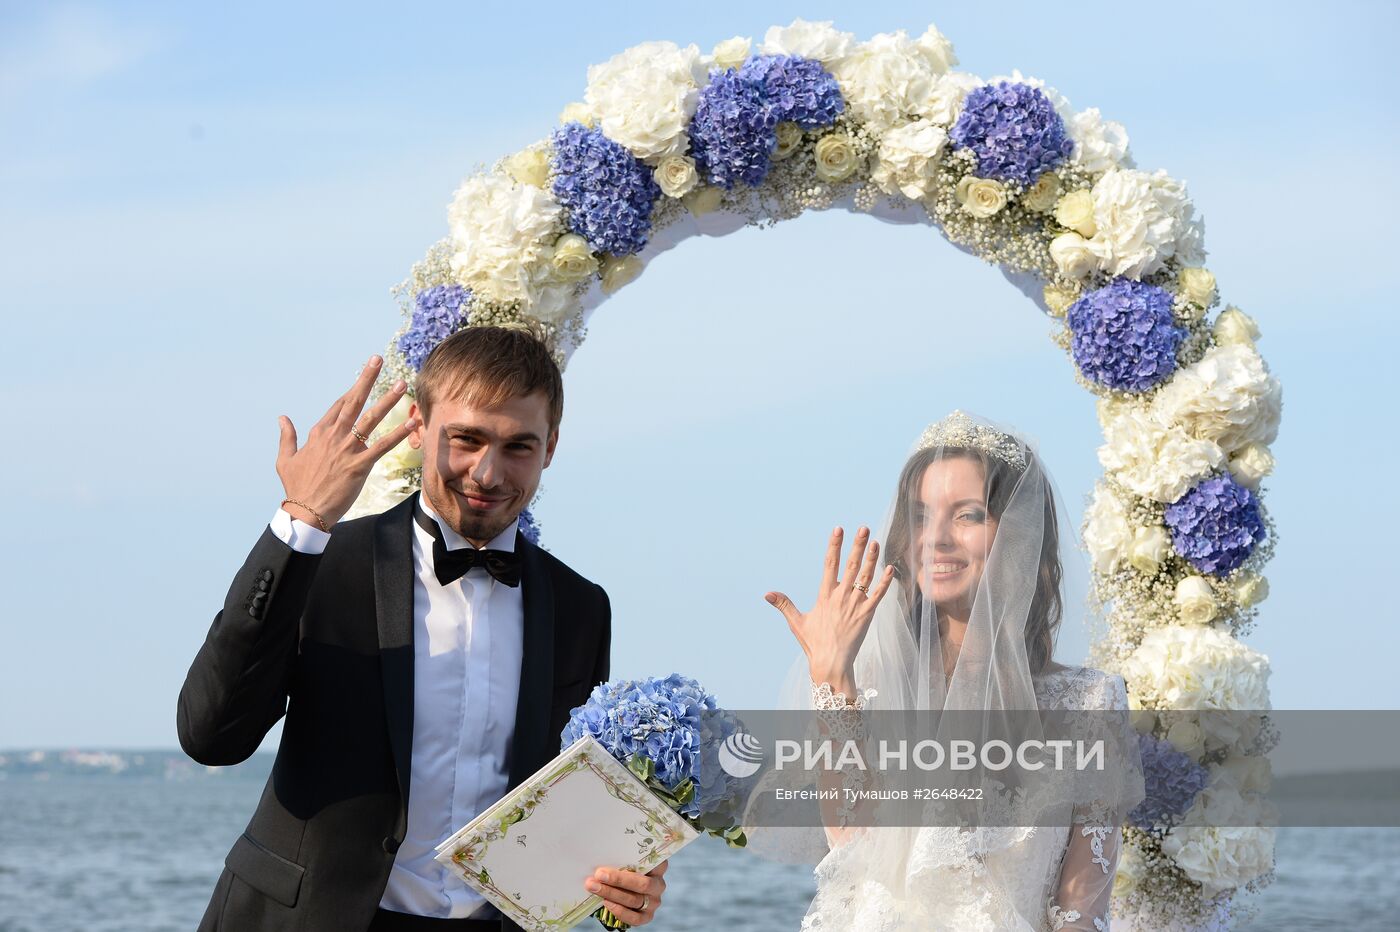 Свадьба российского биатлониста А.Шипулина и Л.Сабитовой состоялась в Екатеринбурге